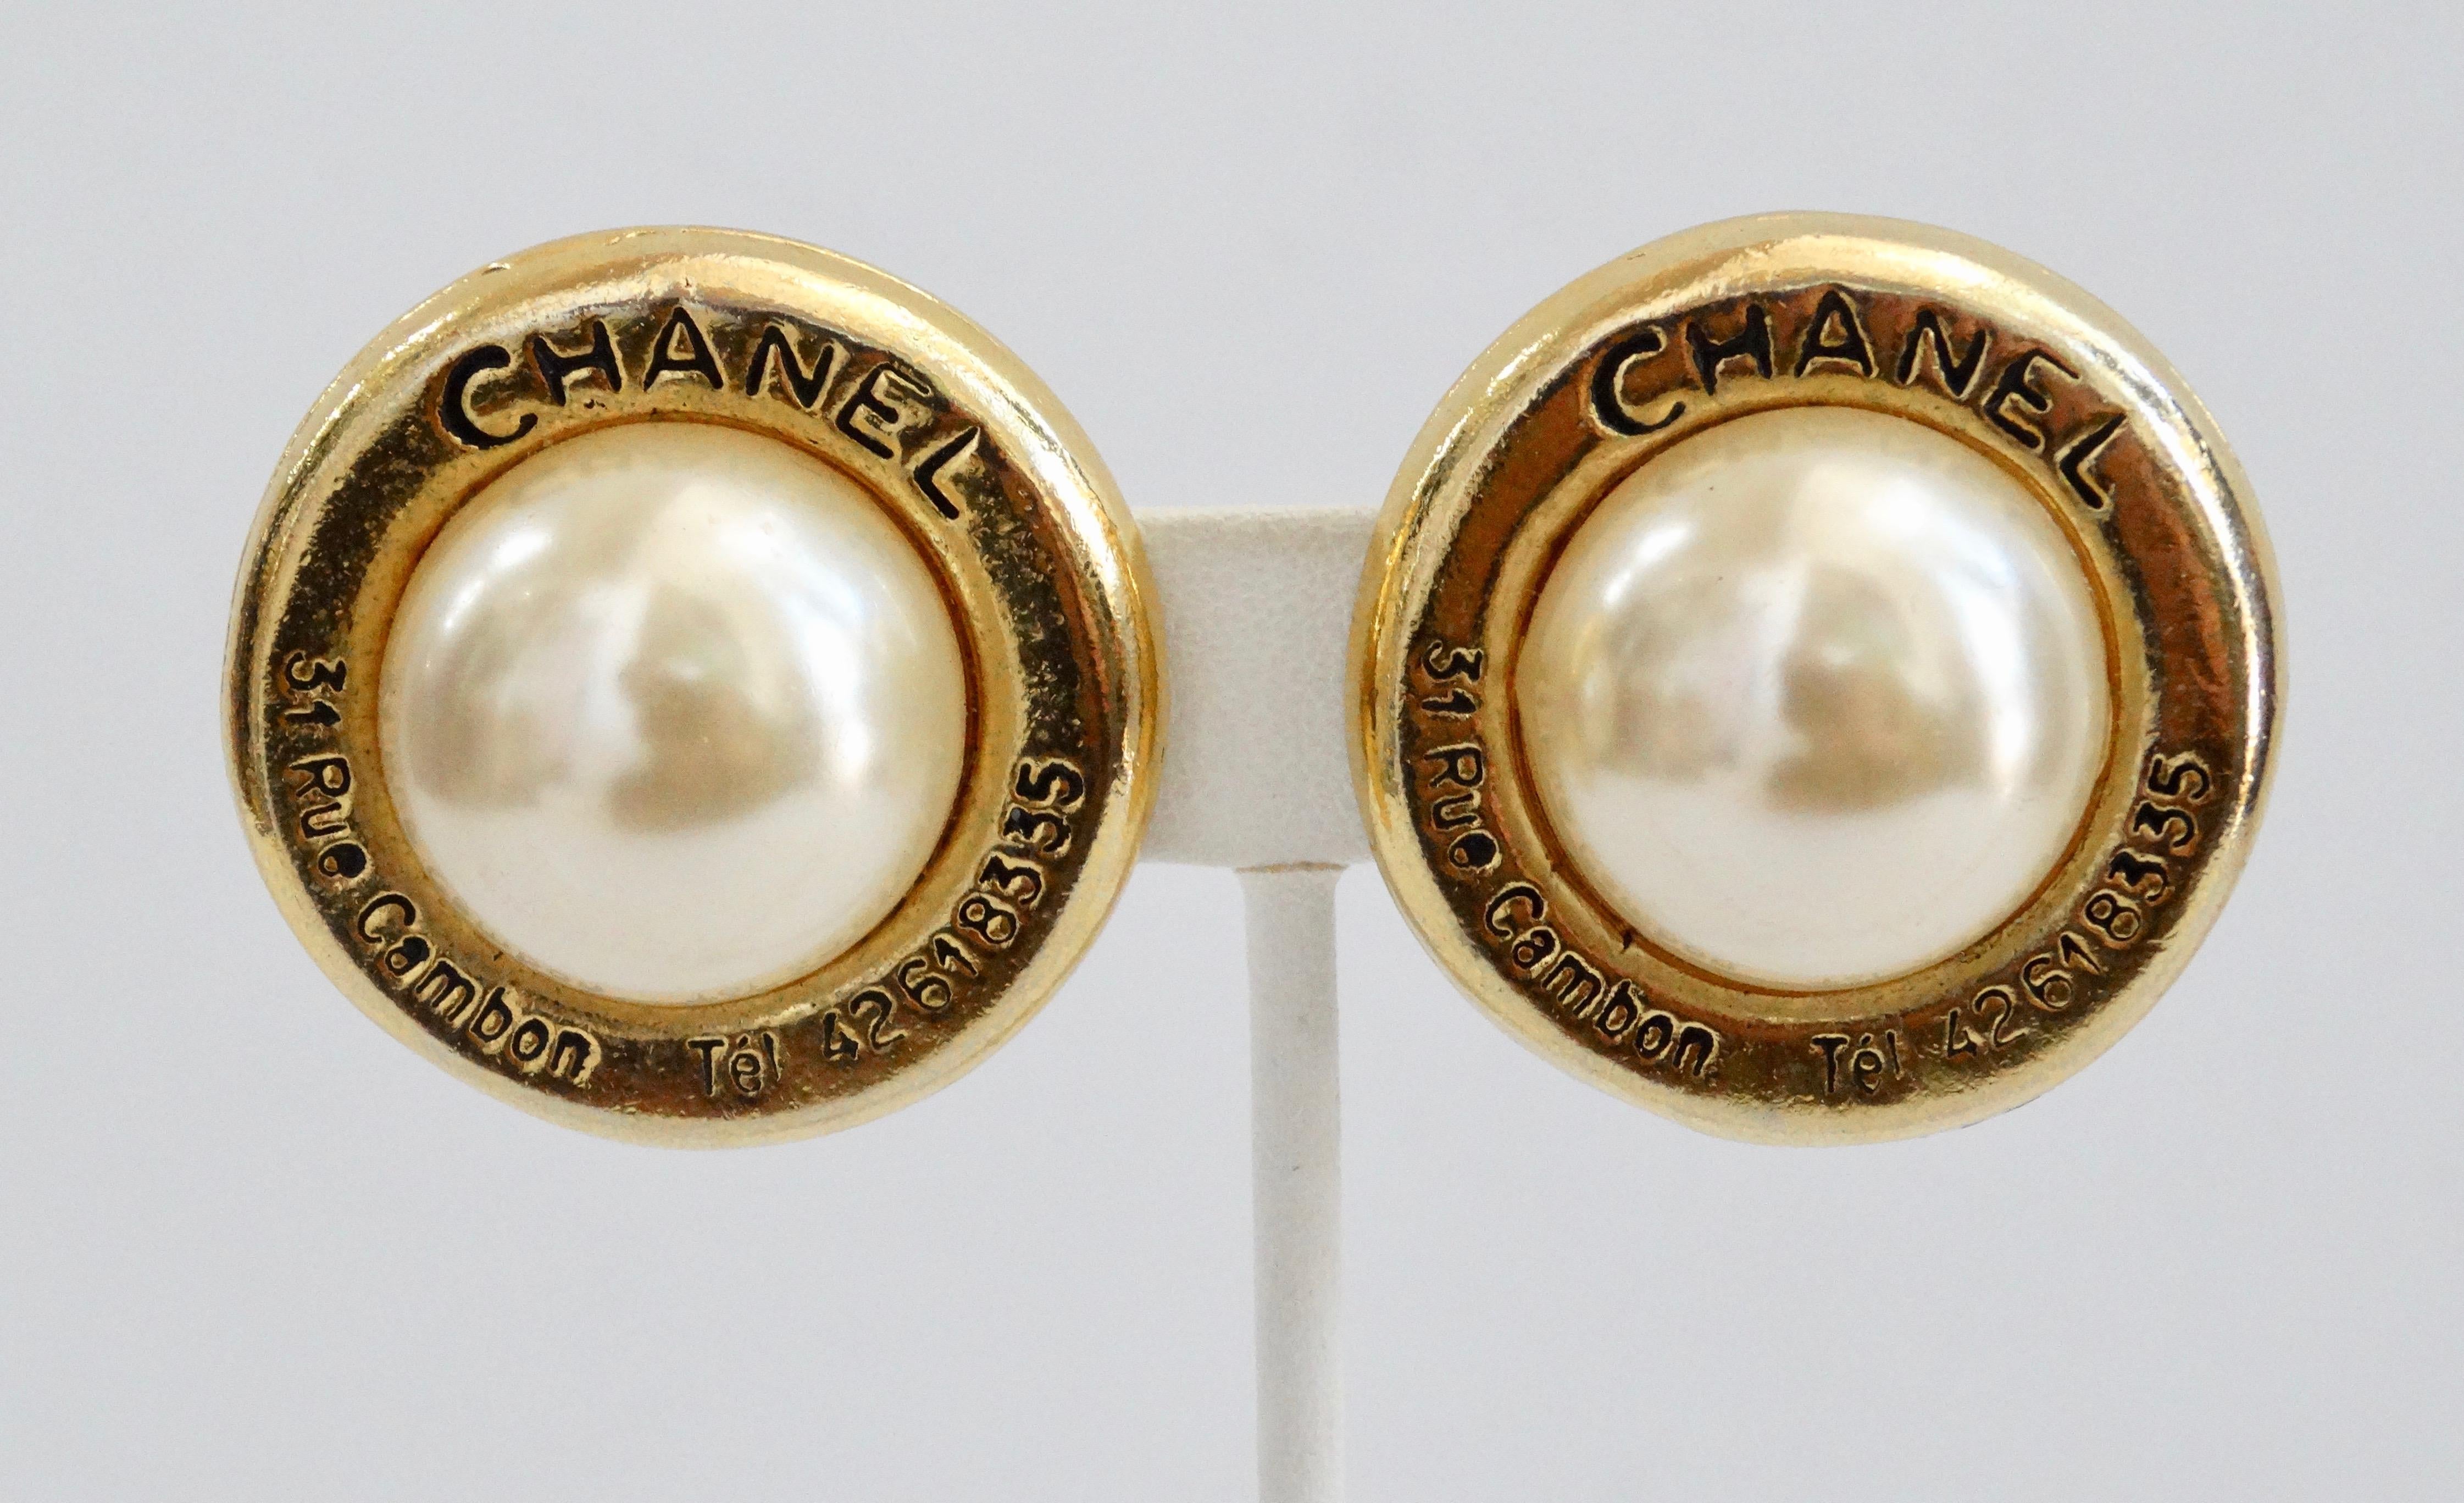 Vervollständigen Sie Ihre Schmucksammlung mit diesen Chanel-Ohrringen! Diese klassischen Ohrringe aus den 1980er Jahren sind vergoldet, mit einer großen Kunstperle besetzt und mit der Adresse und Telefonnummer von Chanel versehen. Sie sind mit